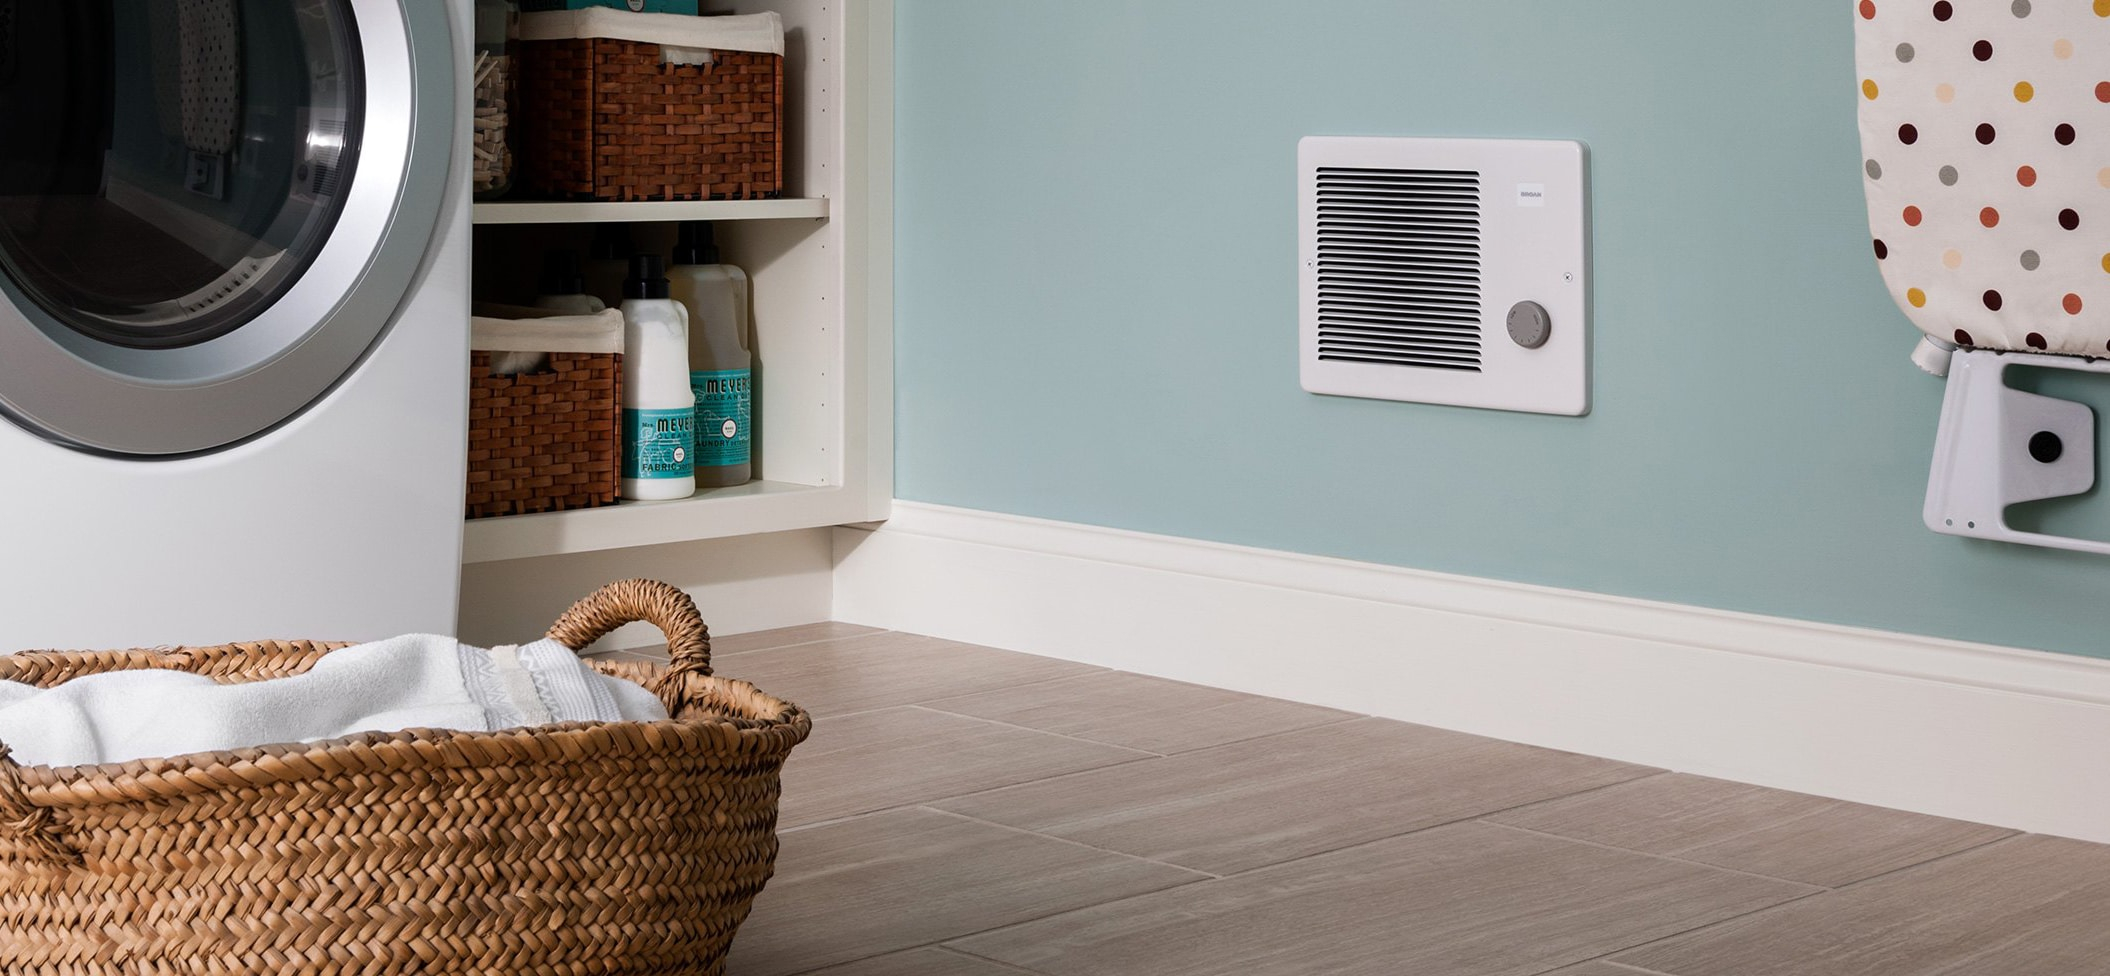 6 Best Bathroom Heaters Reviewed In Detail Apr 2020 regarding measurements 2110 X 976